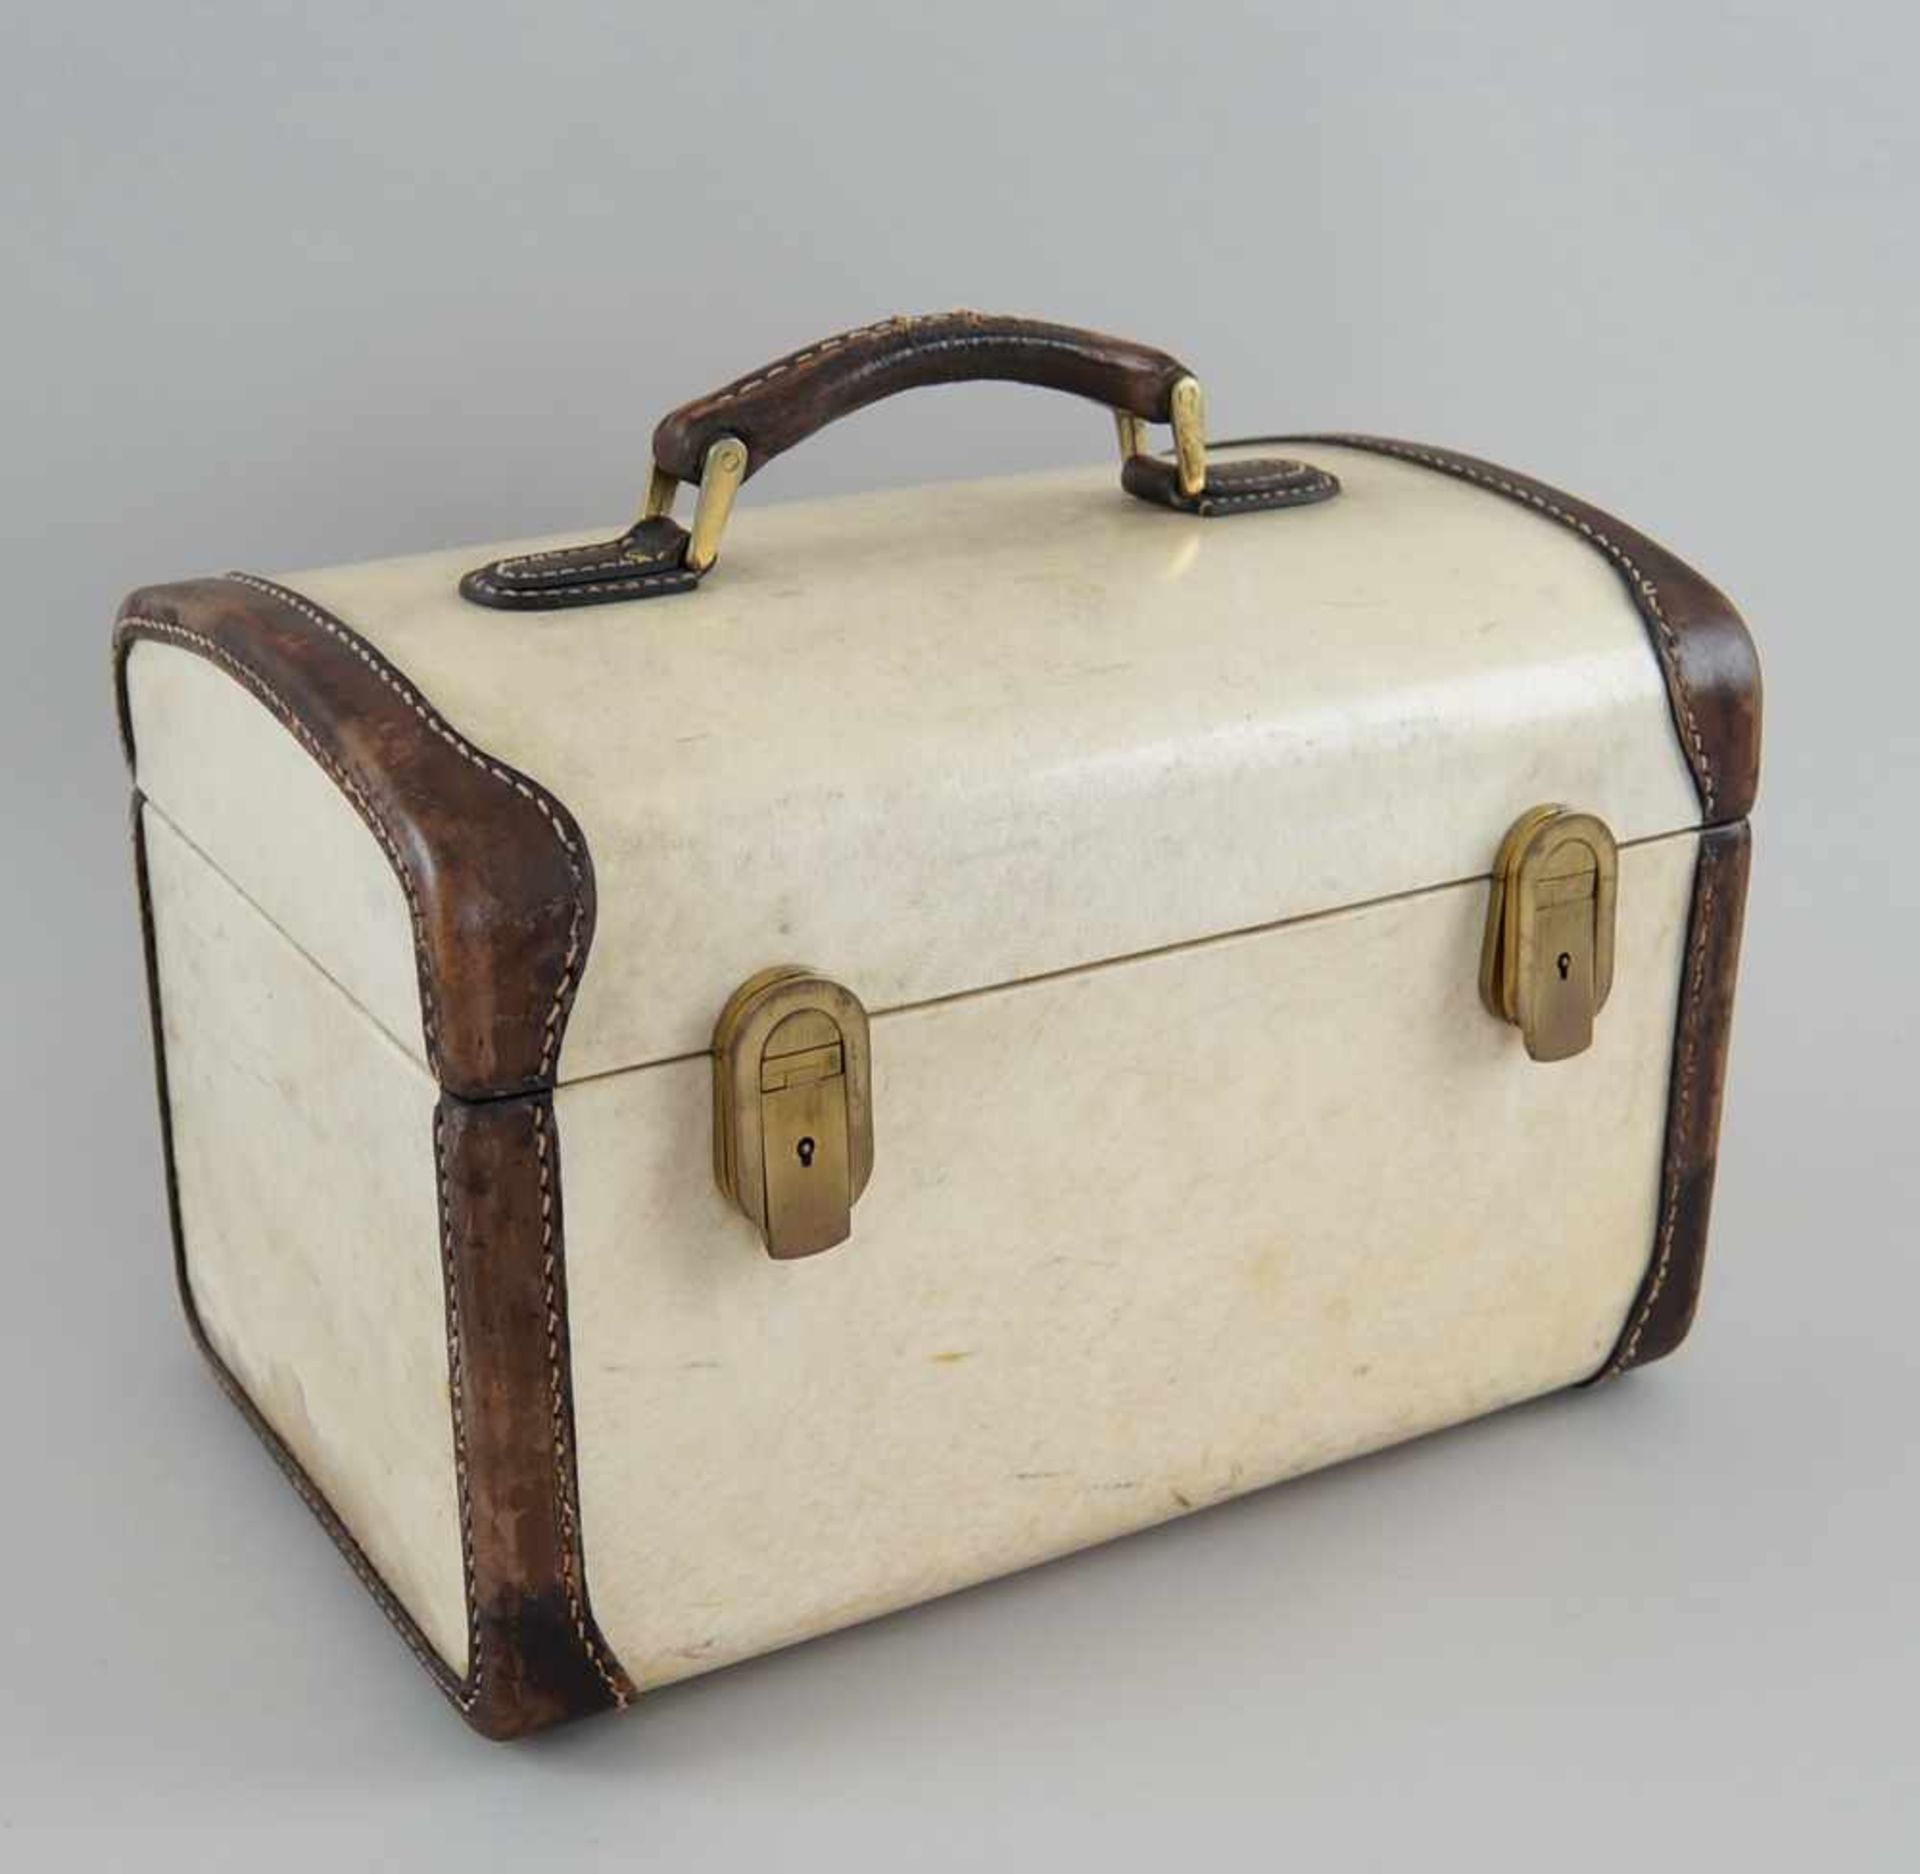 Feiner Koffer mit Beschlägen, Pergament, bezeichnet Franzi Italien, 22x32x22 cm- - -24.00 % buyer'